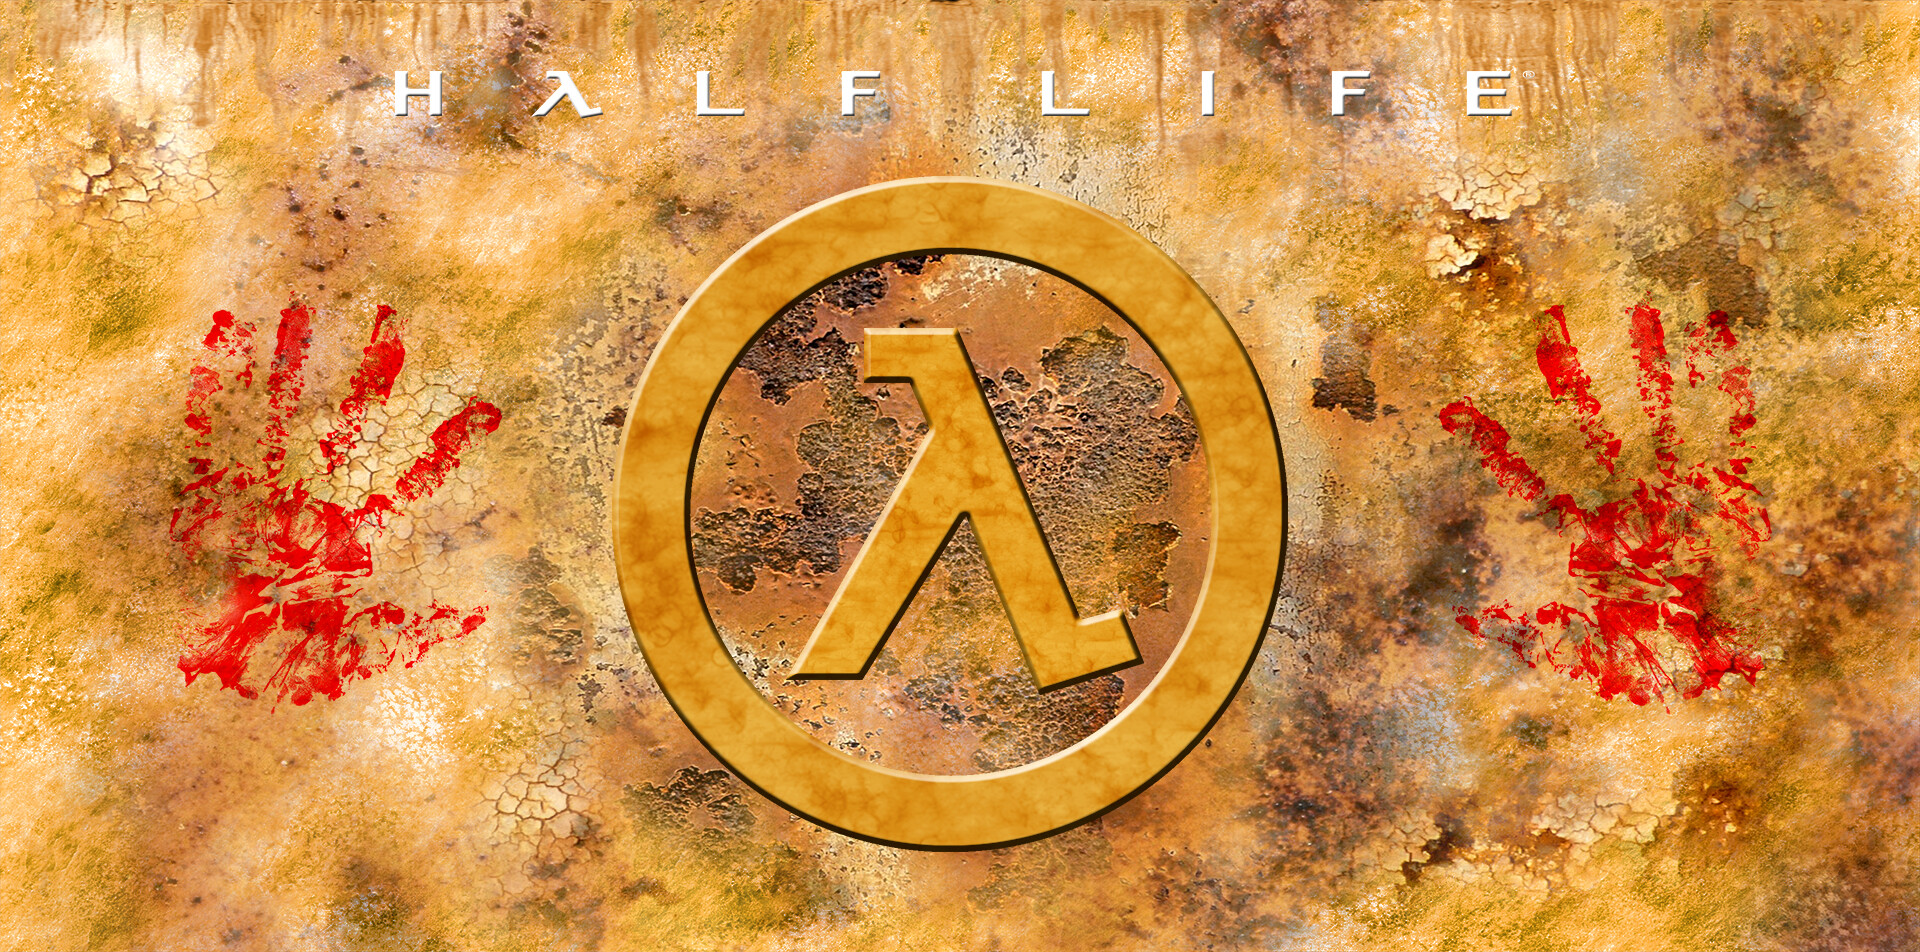 ArtStation - Half Life Wallpaper